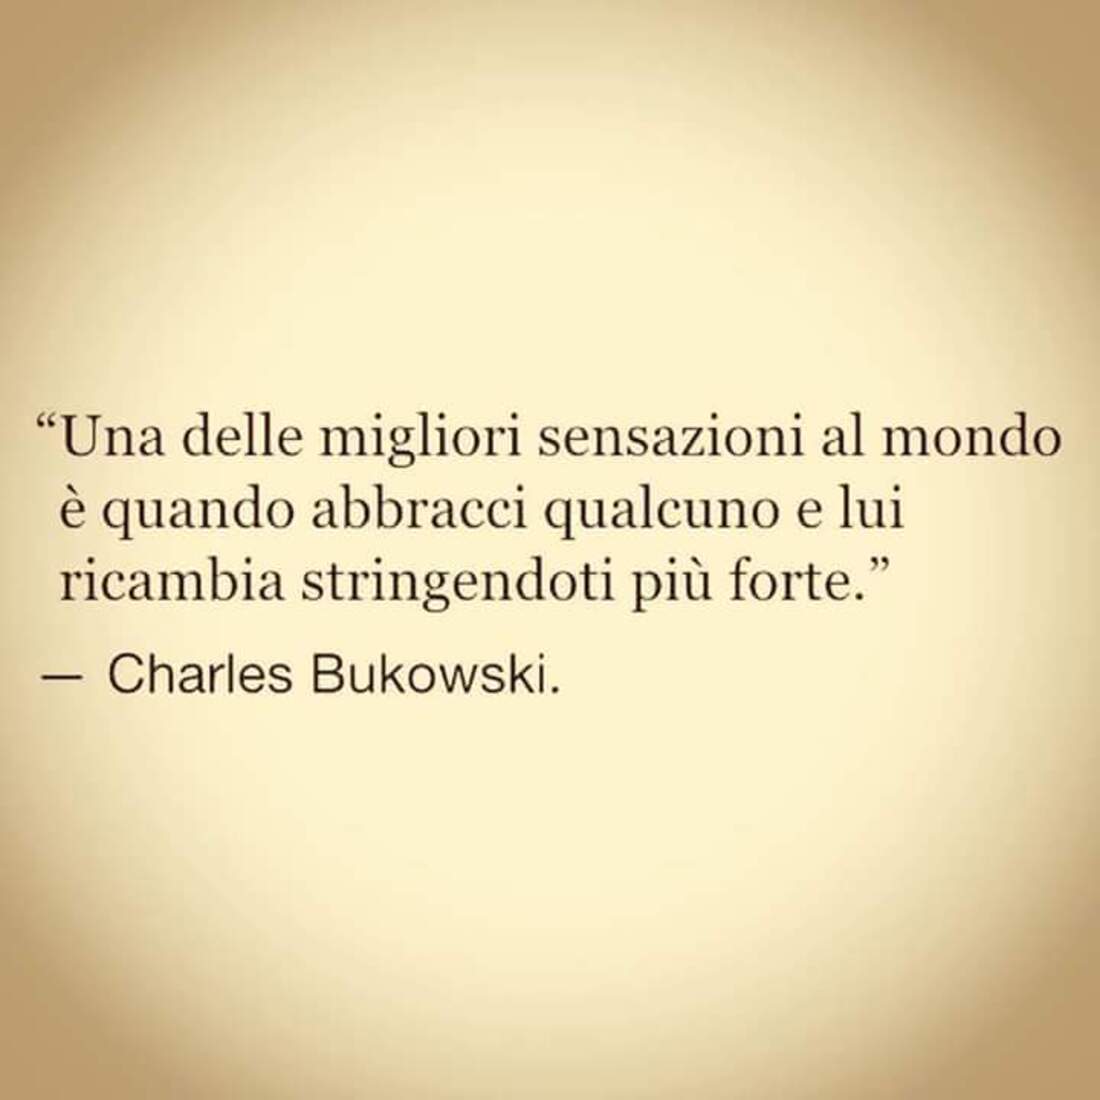 "Una delle migliori sensazioni al mondo è quando abbracci qualcuno e lui ricambia stringendoti più forte."- Charles Bukowski